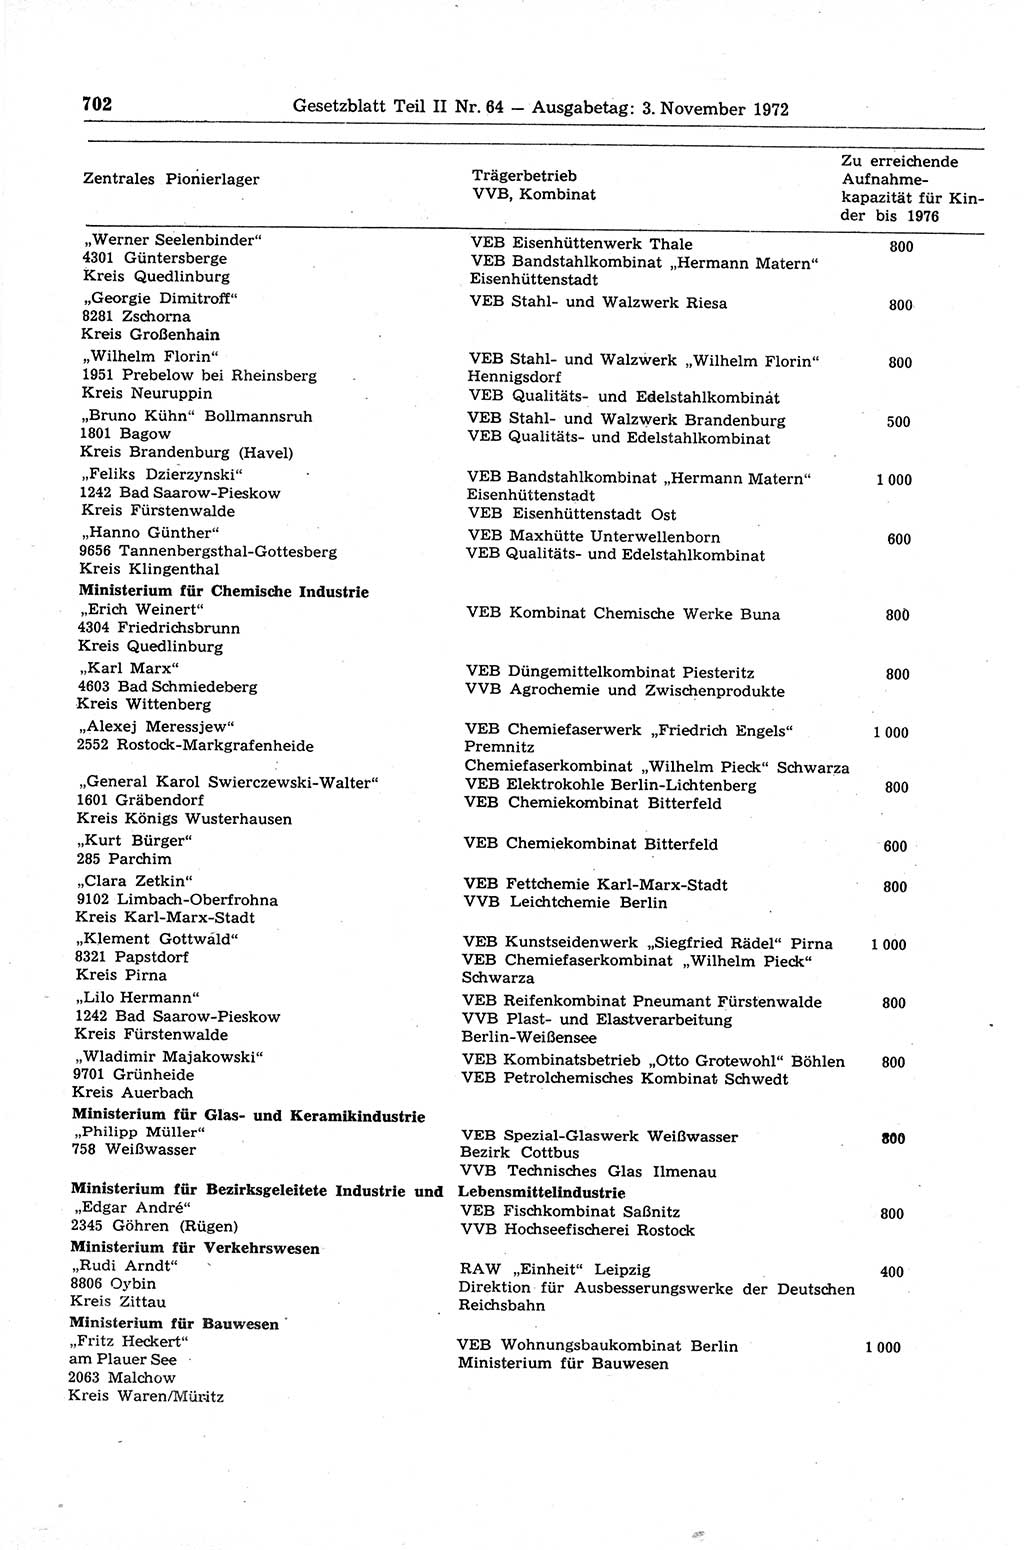 Gesetzblatt (GBl.) der Deutschen Demokratischen Republik (DDR) Teil ⅠⅠ 1972, Seite 702 (GBl. DDR ⅠⅠ 1972, S. 702)